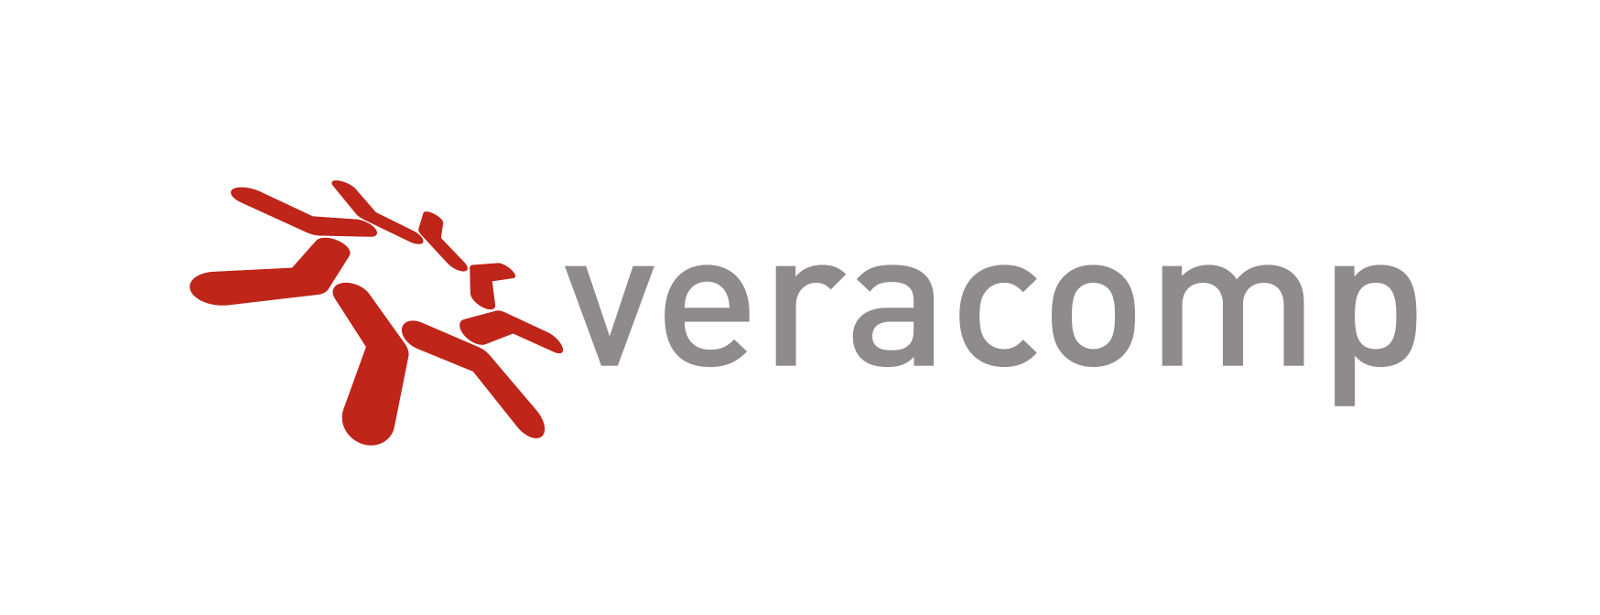 Veracomp zmienił logo i stronę WWW